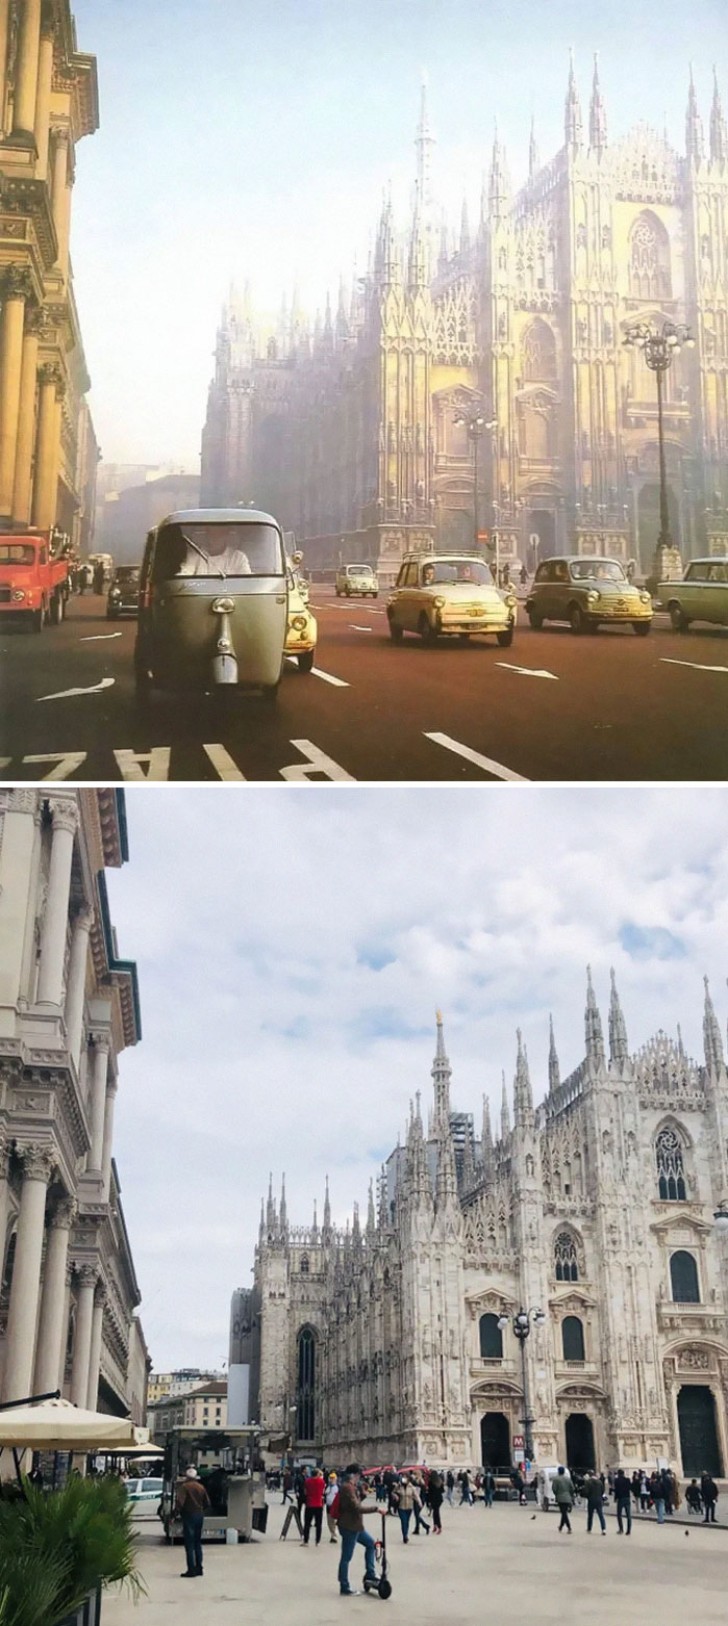 9. La cathédrale de Milan, avec les voitures d'hier et d'aujourd'hui : une zone réservée uniquement aux piétons.